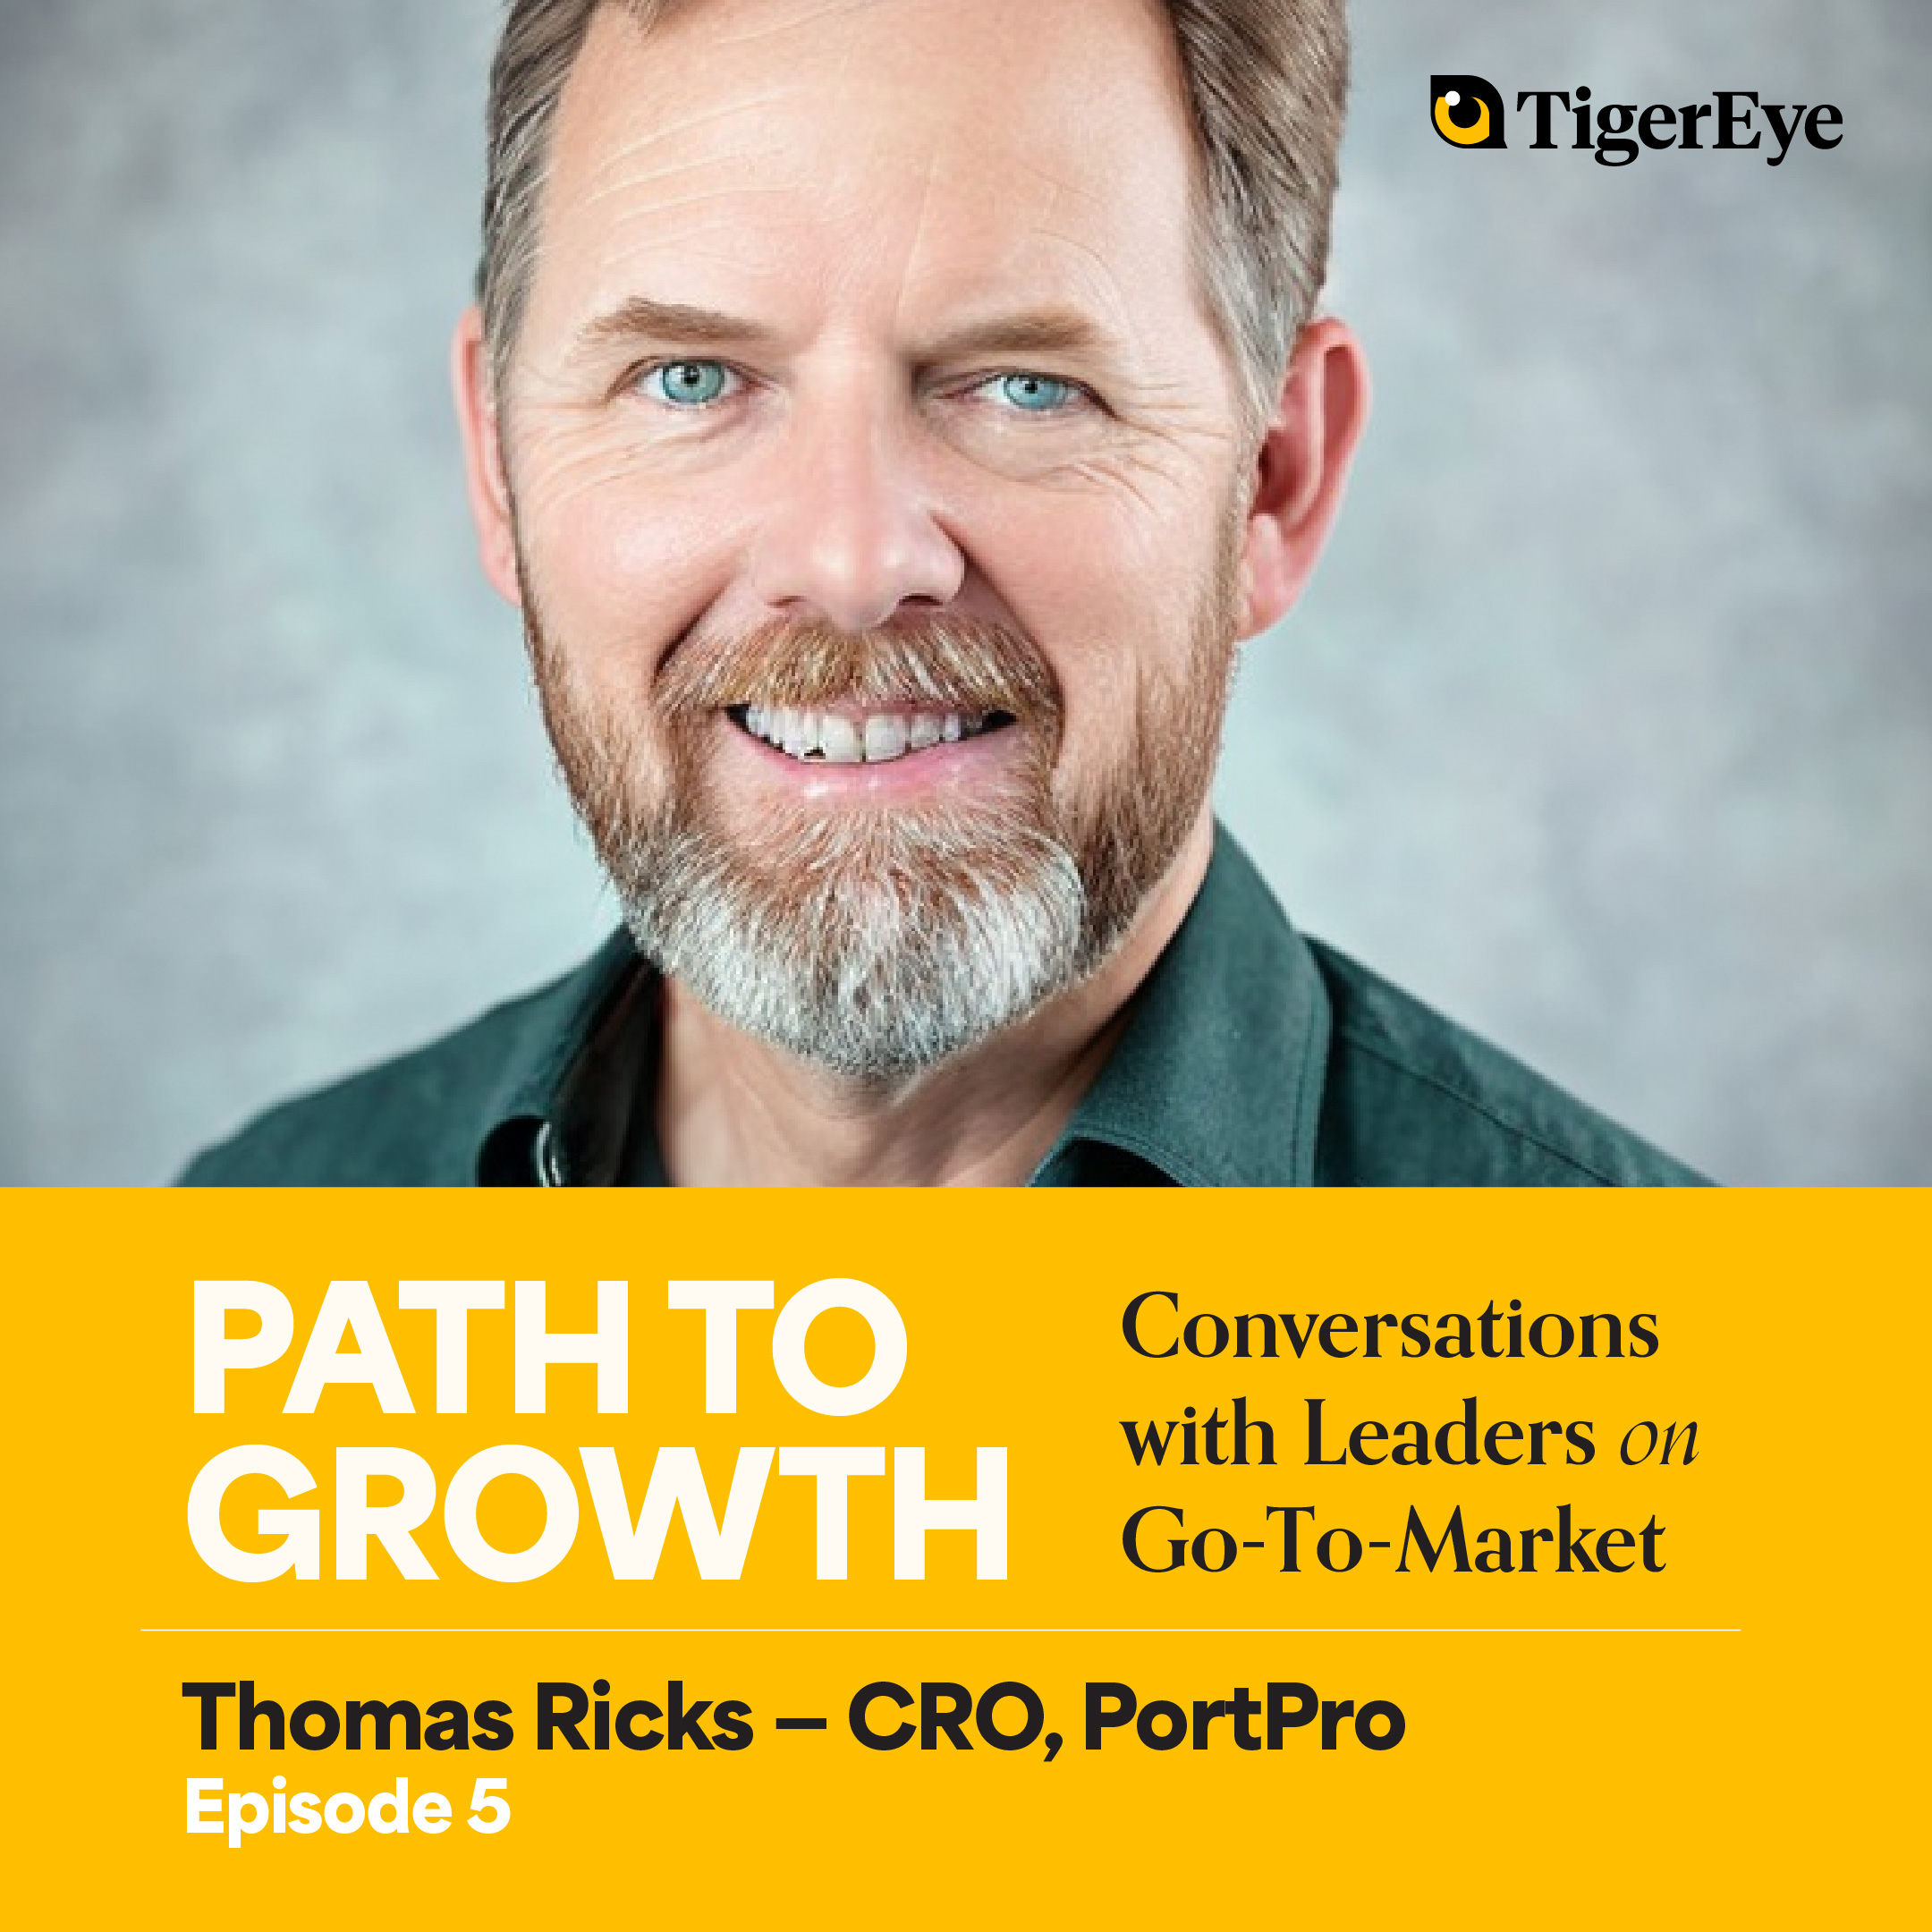 Thomas Ricks - CRO, PortPro | The virtue of consistency in sales culture